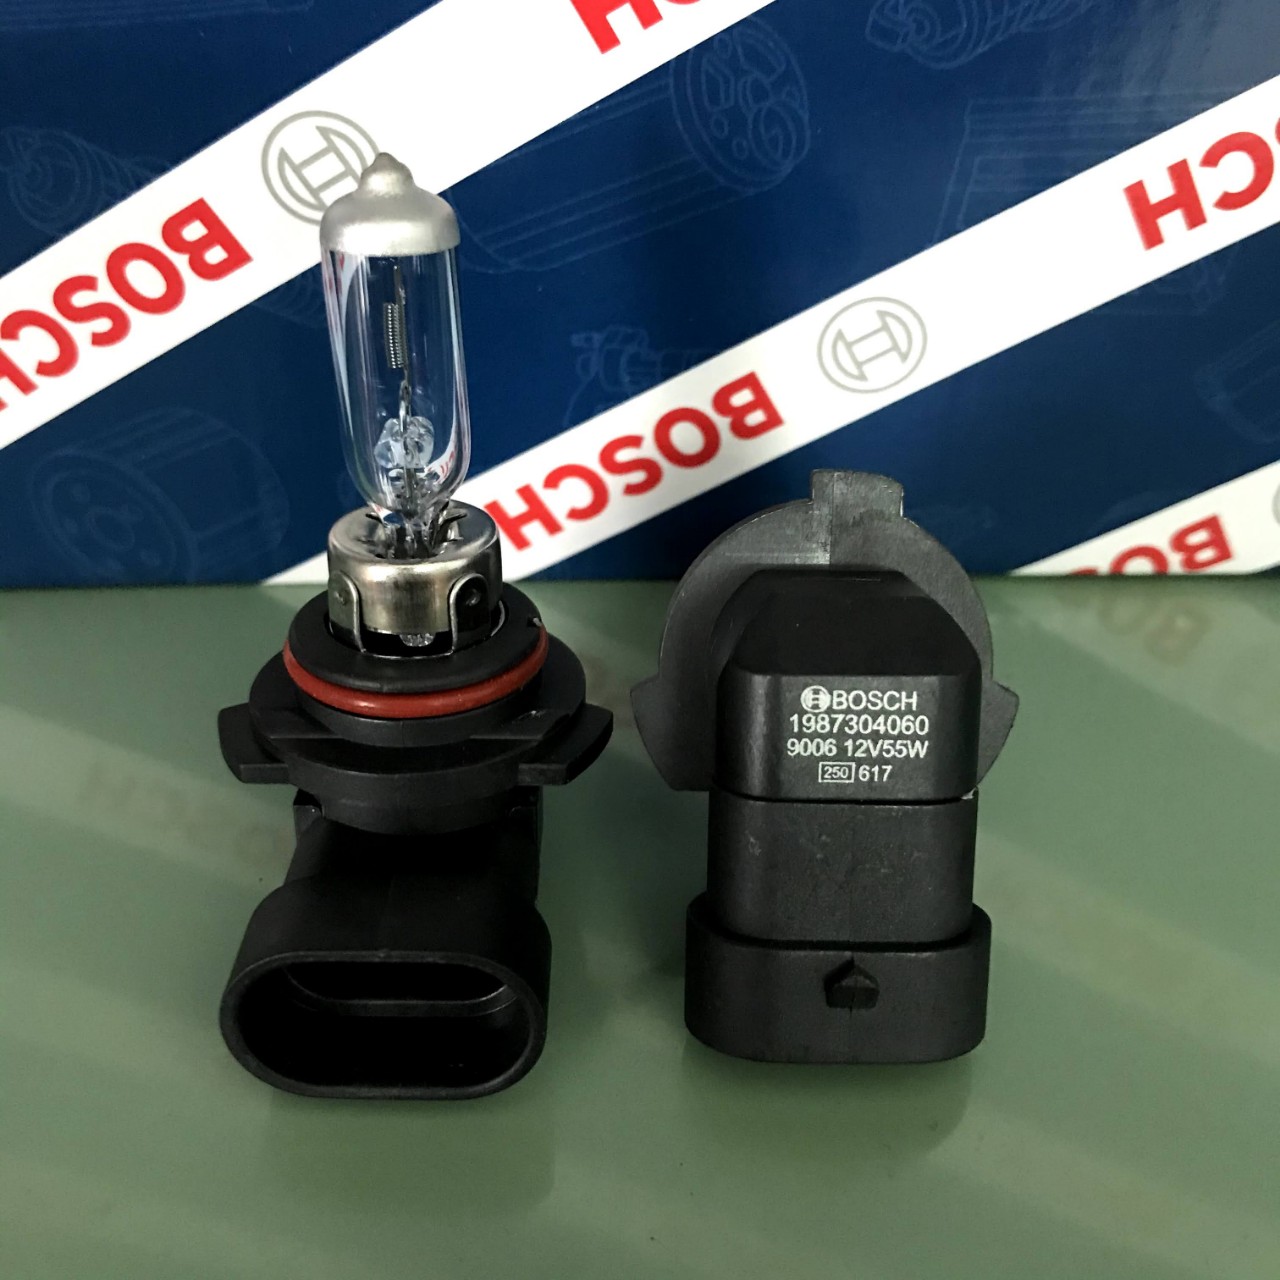 Bóng đèn hiệu năng cao Sportec 4000 - 9006 (HB4), 12V, 55W, P22d chính hãng Bosch (1987304060) (Cặp 2 cái)